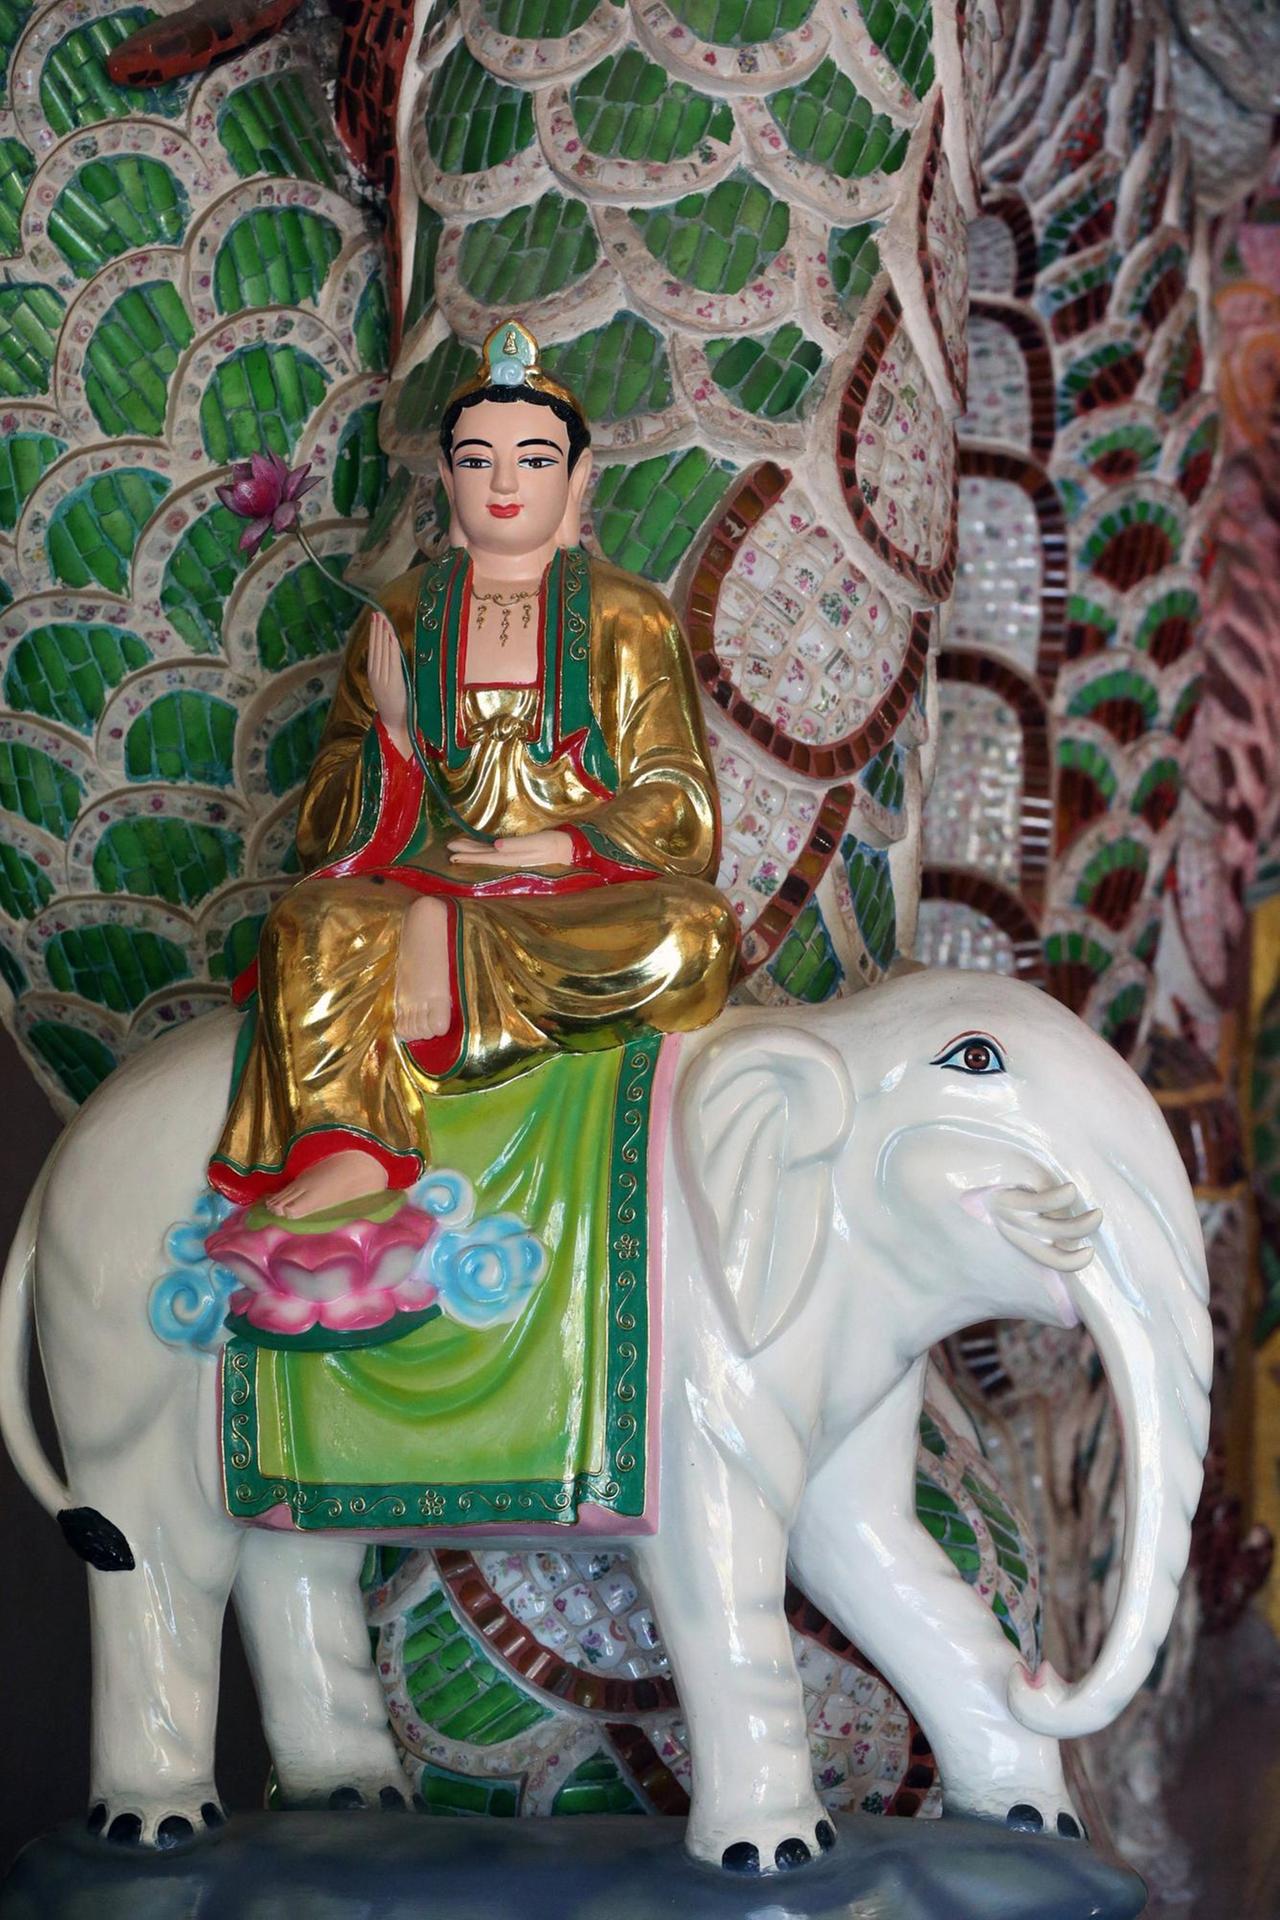 Buddha auf einem weißen Elefanten. Statue im buddhistischen Vạn Hạnh Zen Tempel in Vietnam.